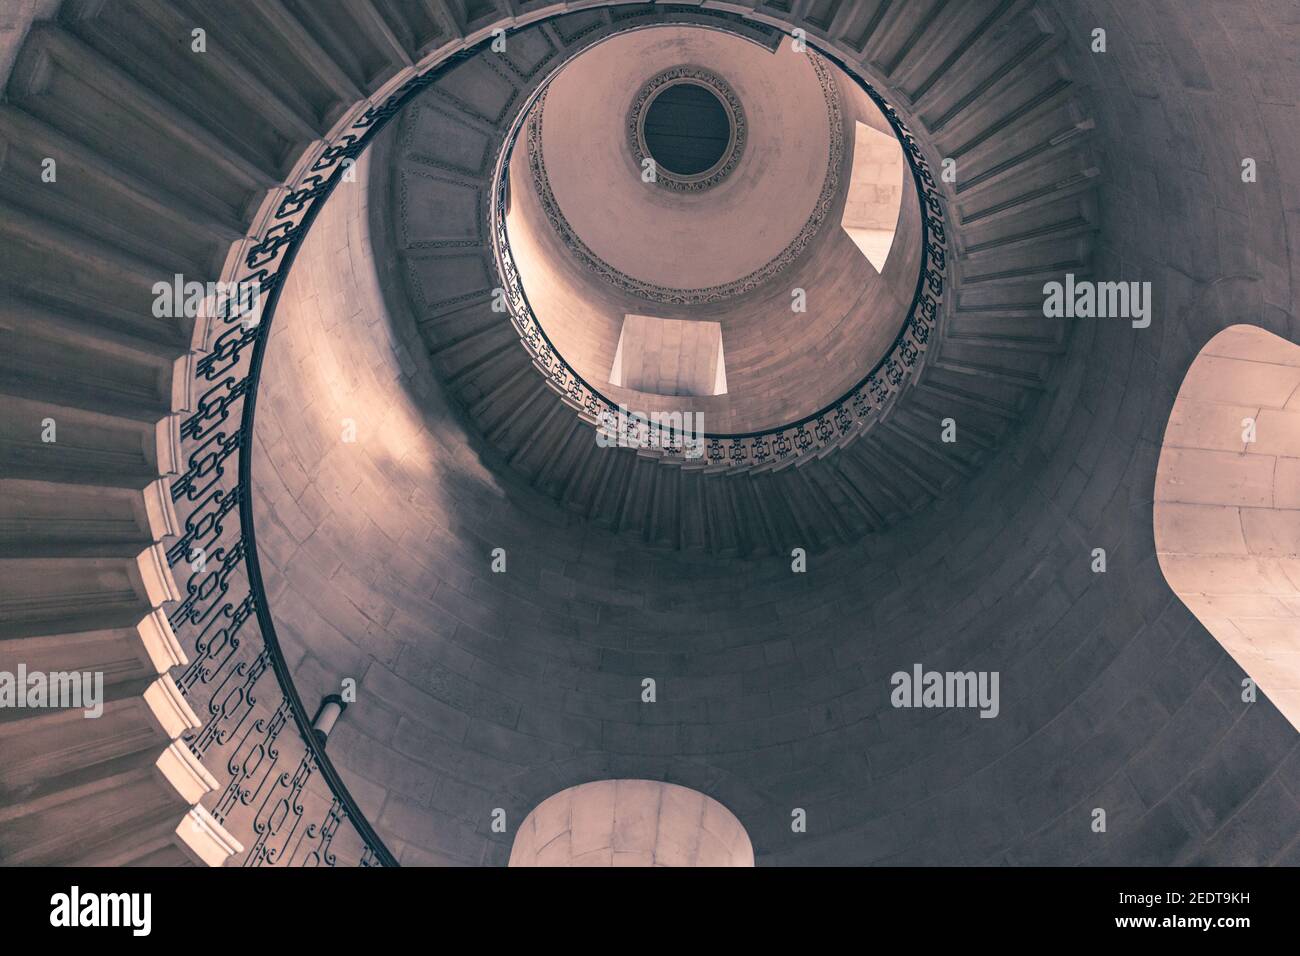 Die Dean's Staircase, St Paul's Cathedral, sehen Sie die Wendeltreppe hinauf, die in den Harry Potter Filmen, London, Großbritannien, als das Treppenhaus der Weissagung berühmt wurde Stockfoto